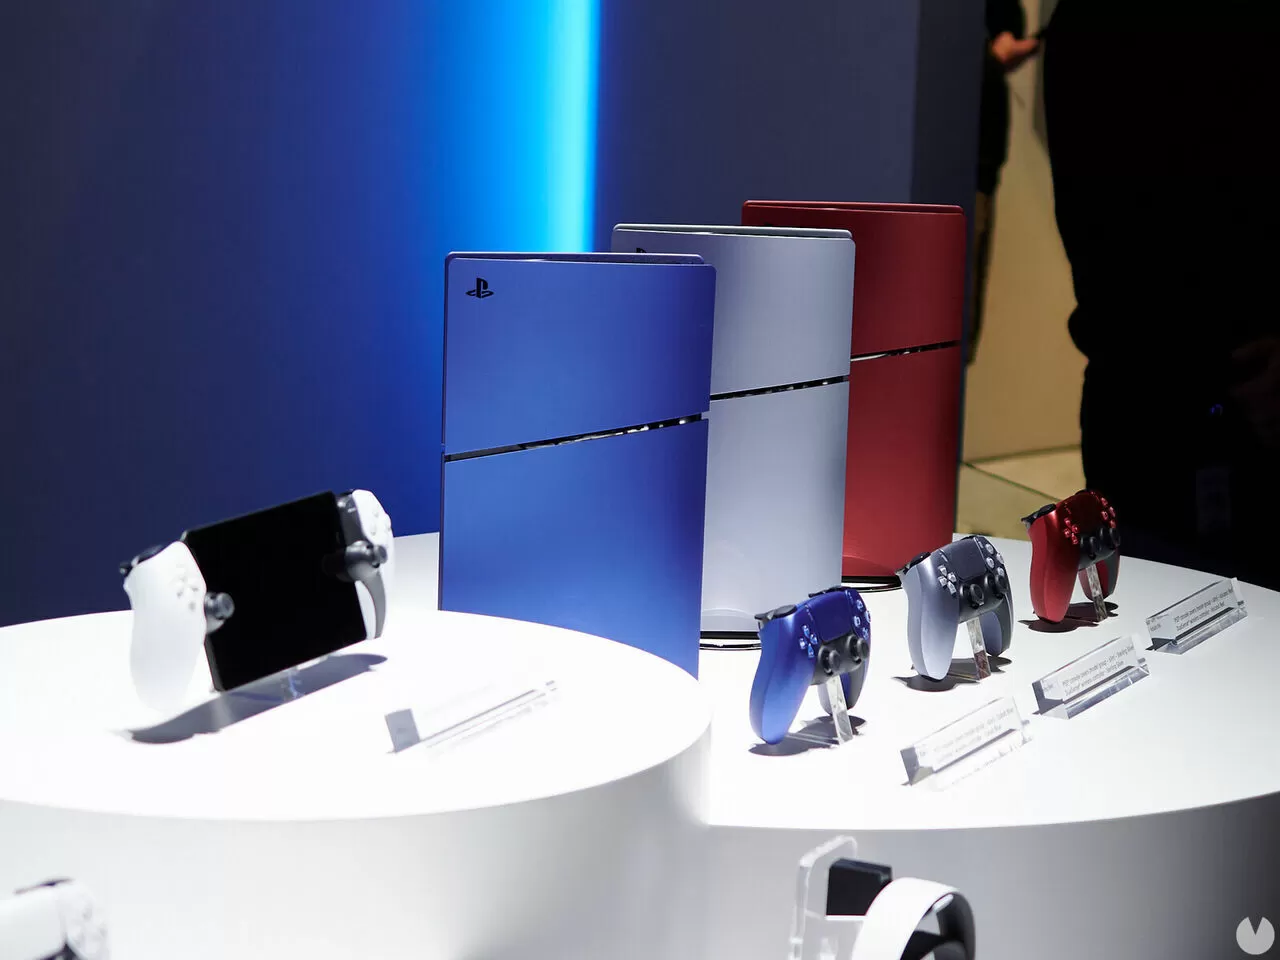 Es oficial! PS5 tendrá sus esperadas carcasas de colores intercambiables